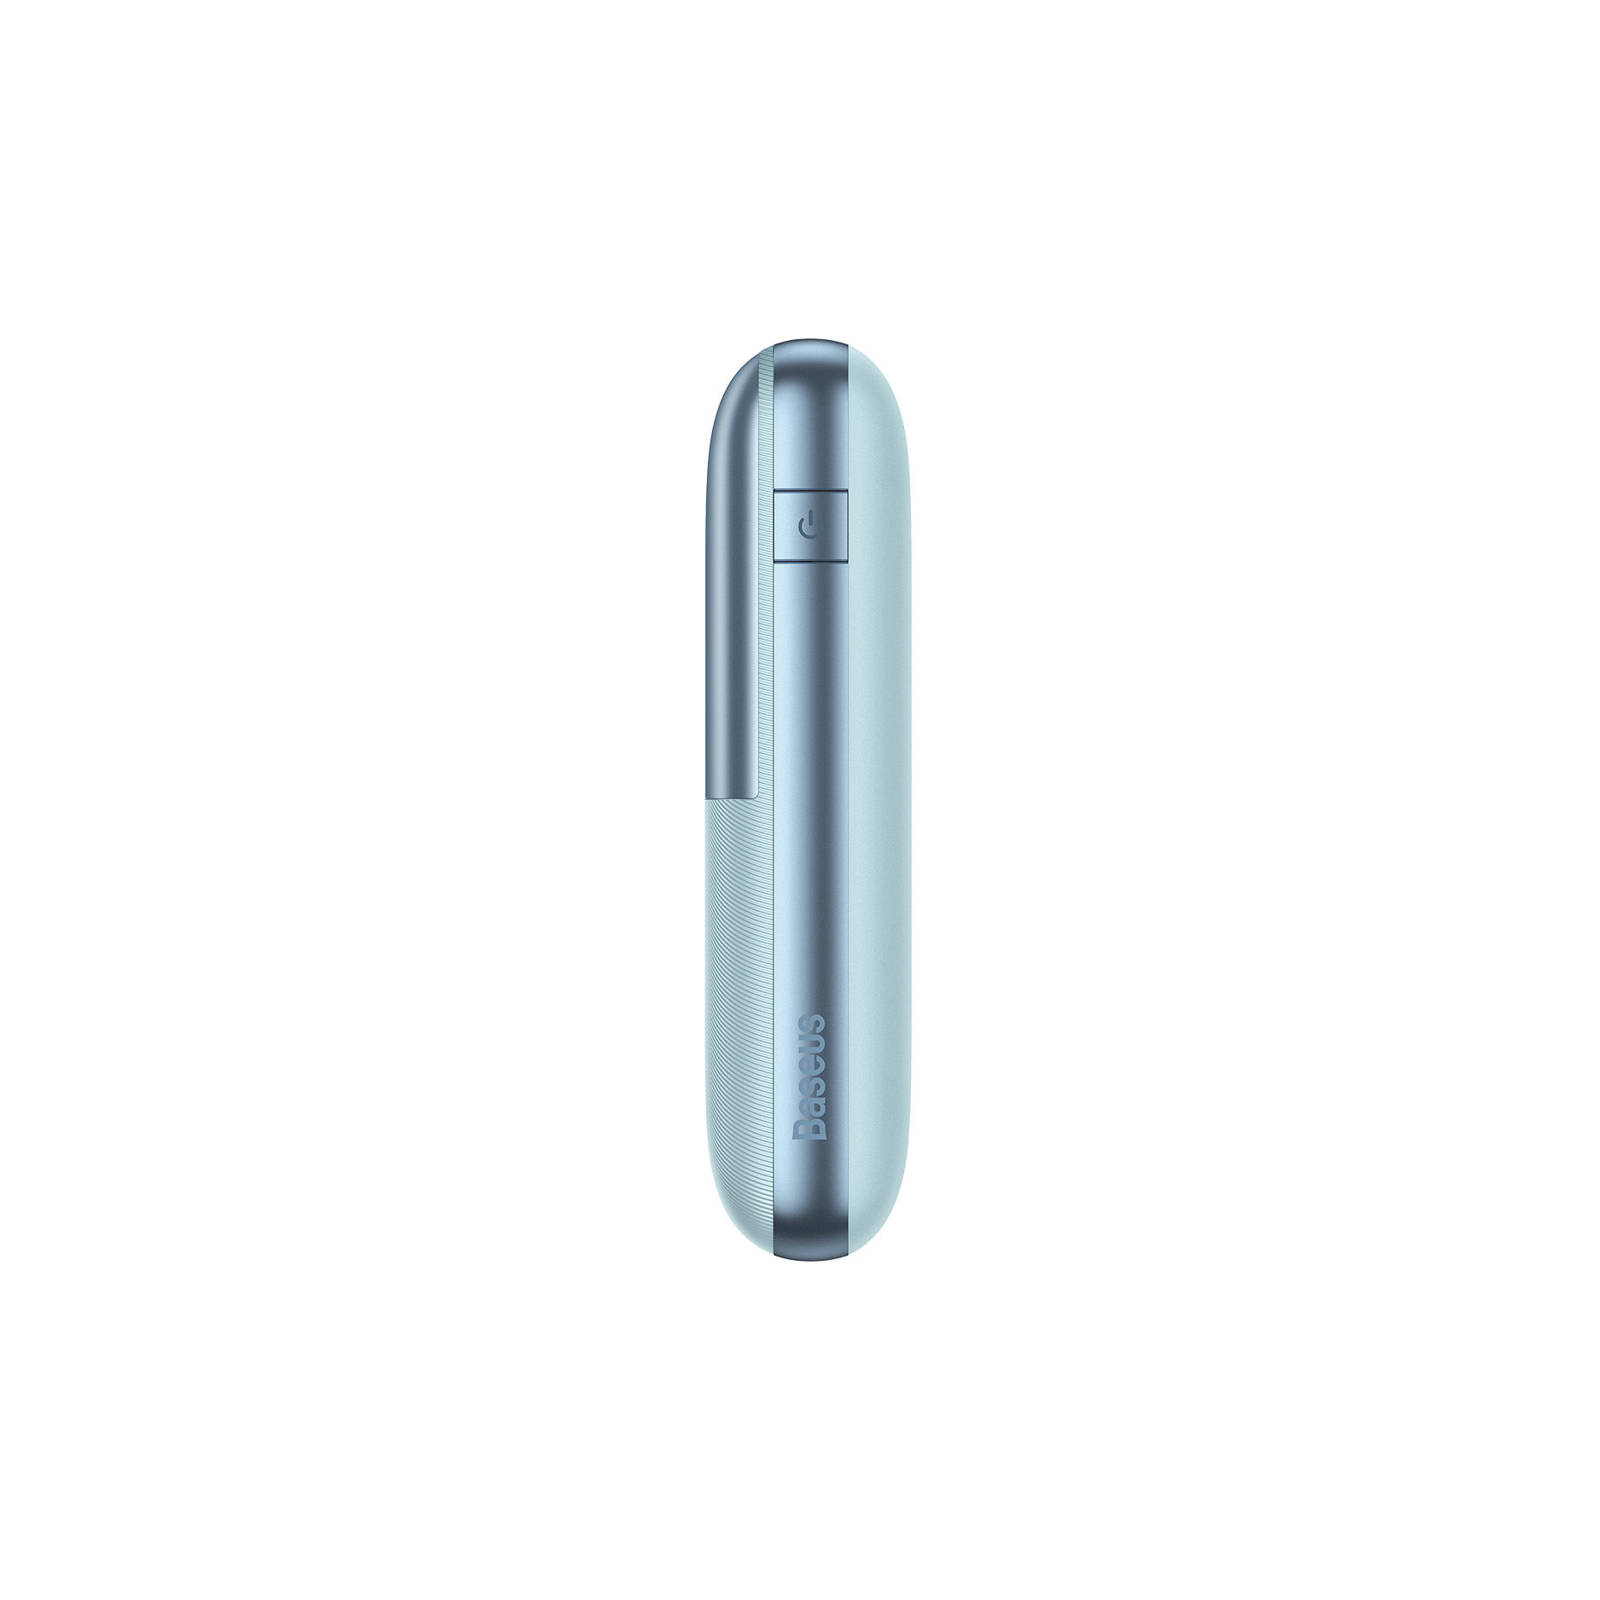 Батарея универсальная Baseus Pro 20000mAh, 22.5W, Blue, with USB-A - USB-C 3A 0.3m cable (PPBD040303) изображение 4